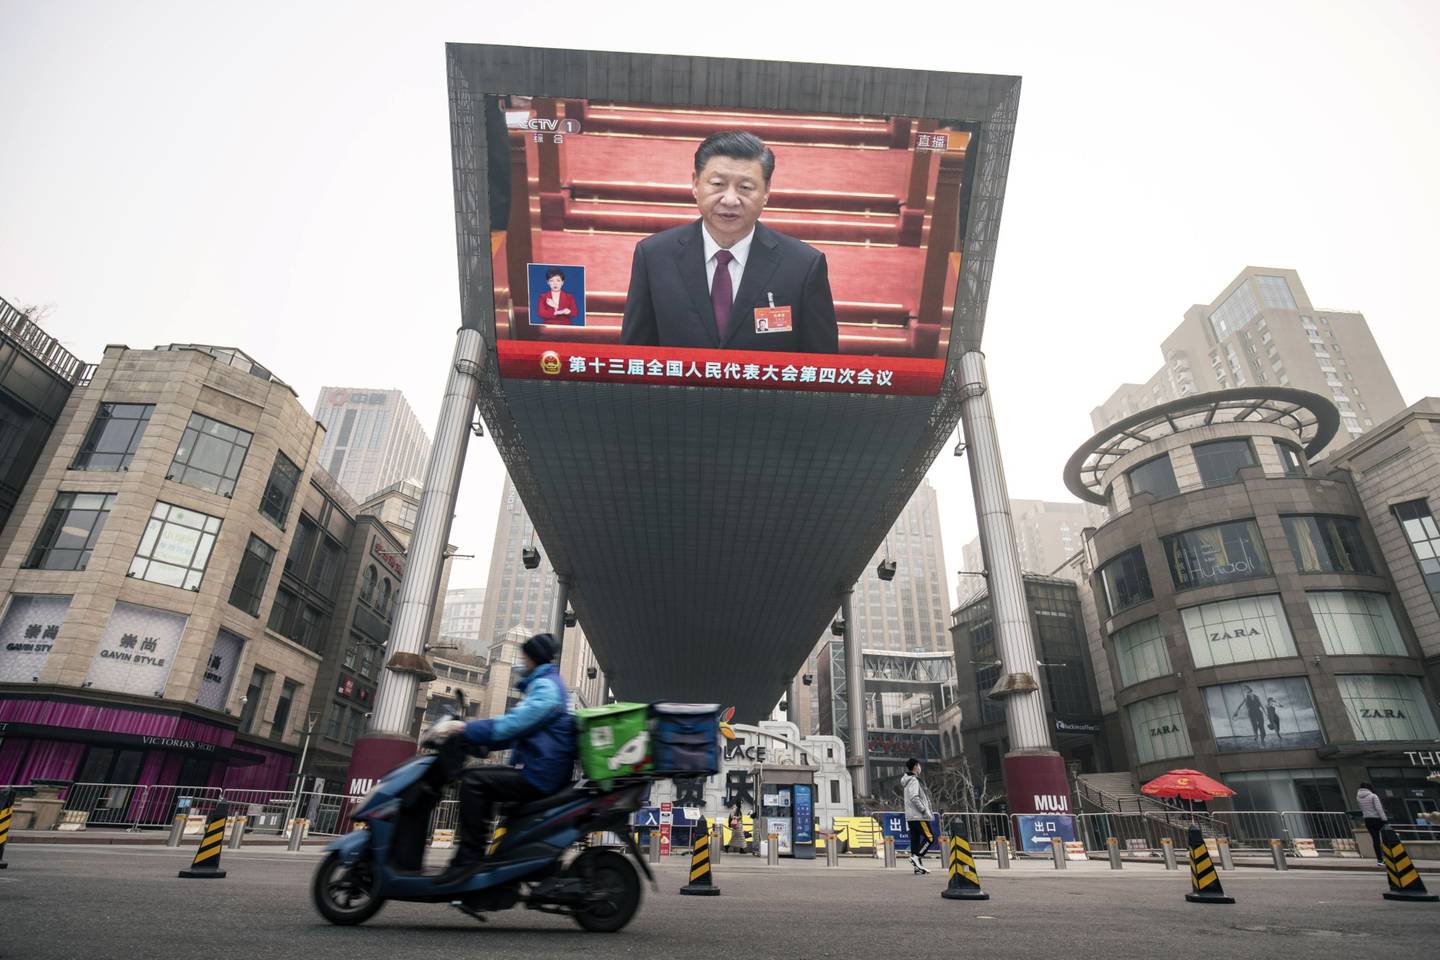 Un repartidor conduce una motocicleta frente a una pantalla que muestra una transmisión de noticias en vivo del presidente chino Xi Jinping en la Asamblea Popular Nacional en Beijing, China. Fotógrafo: Qilai Shen/Bloomberg